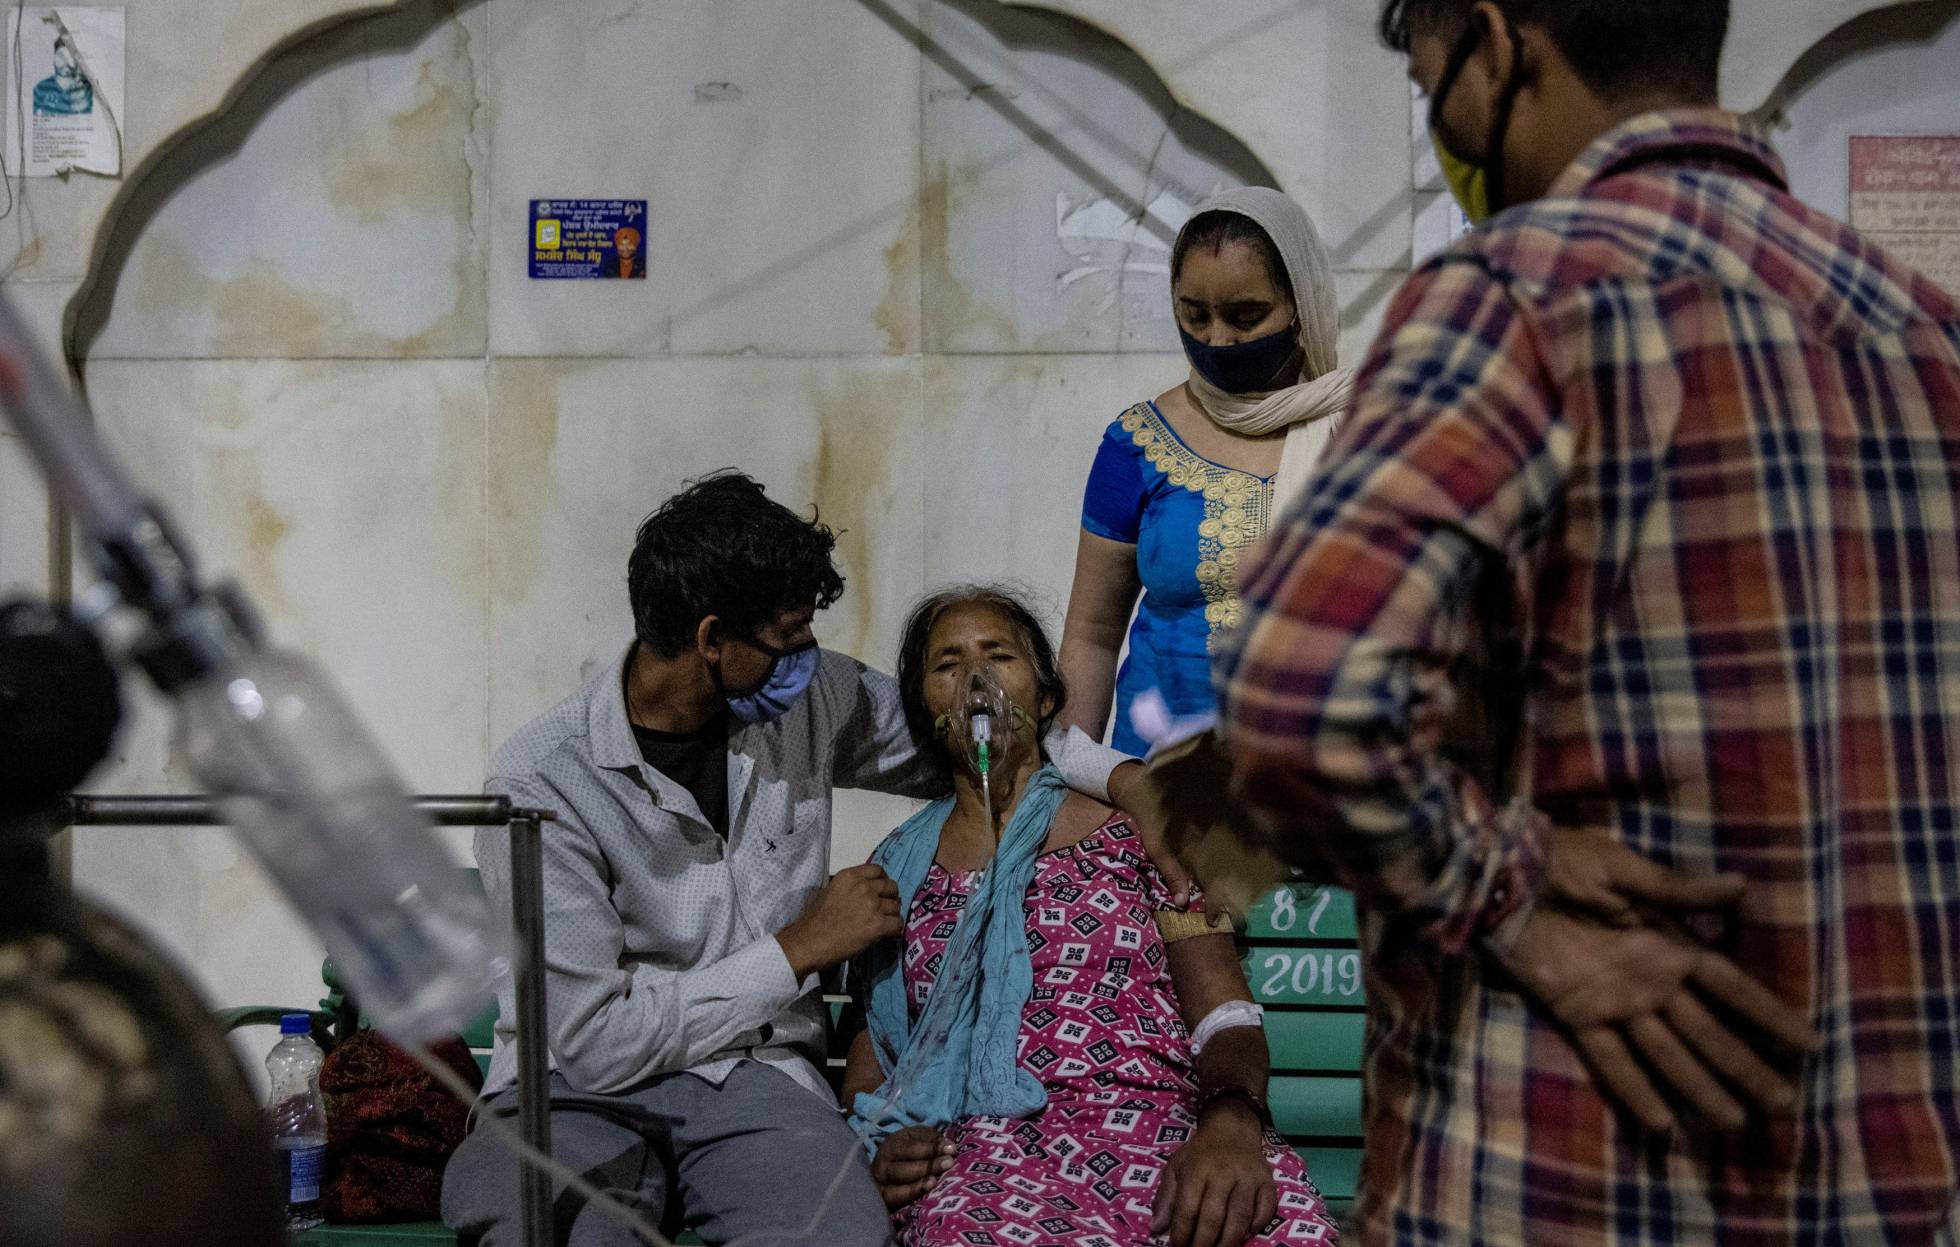 Fotos: La India ante la creciente crisis de la covid-19, en imágenes |  Sociedad | EL PAÍS